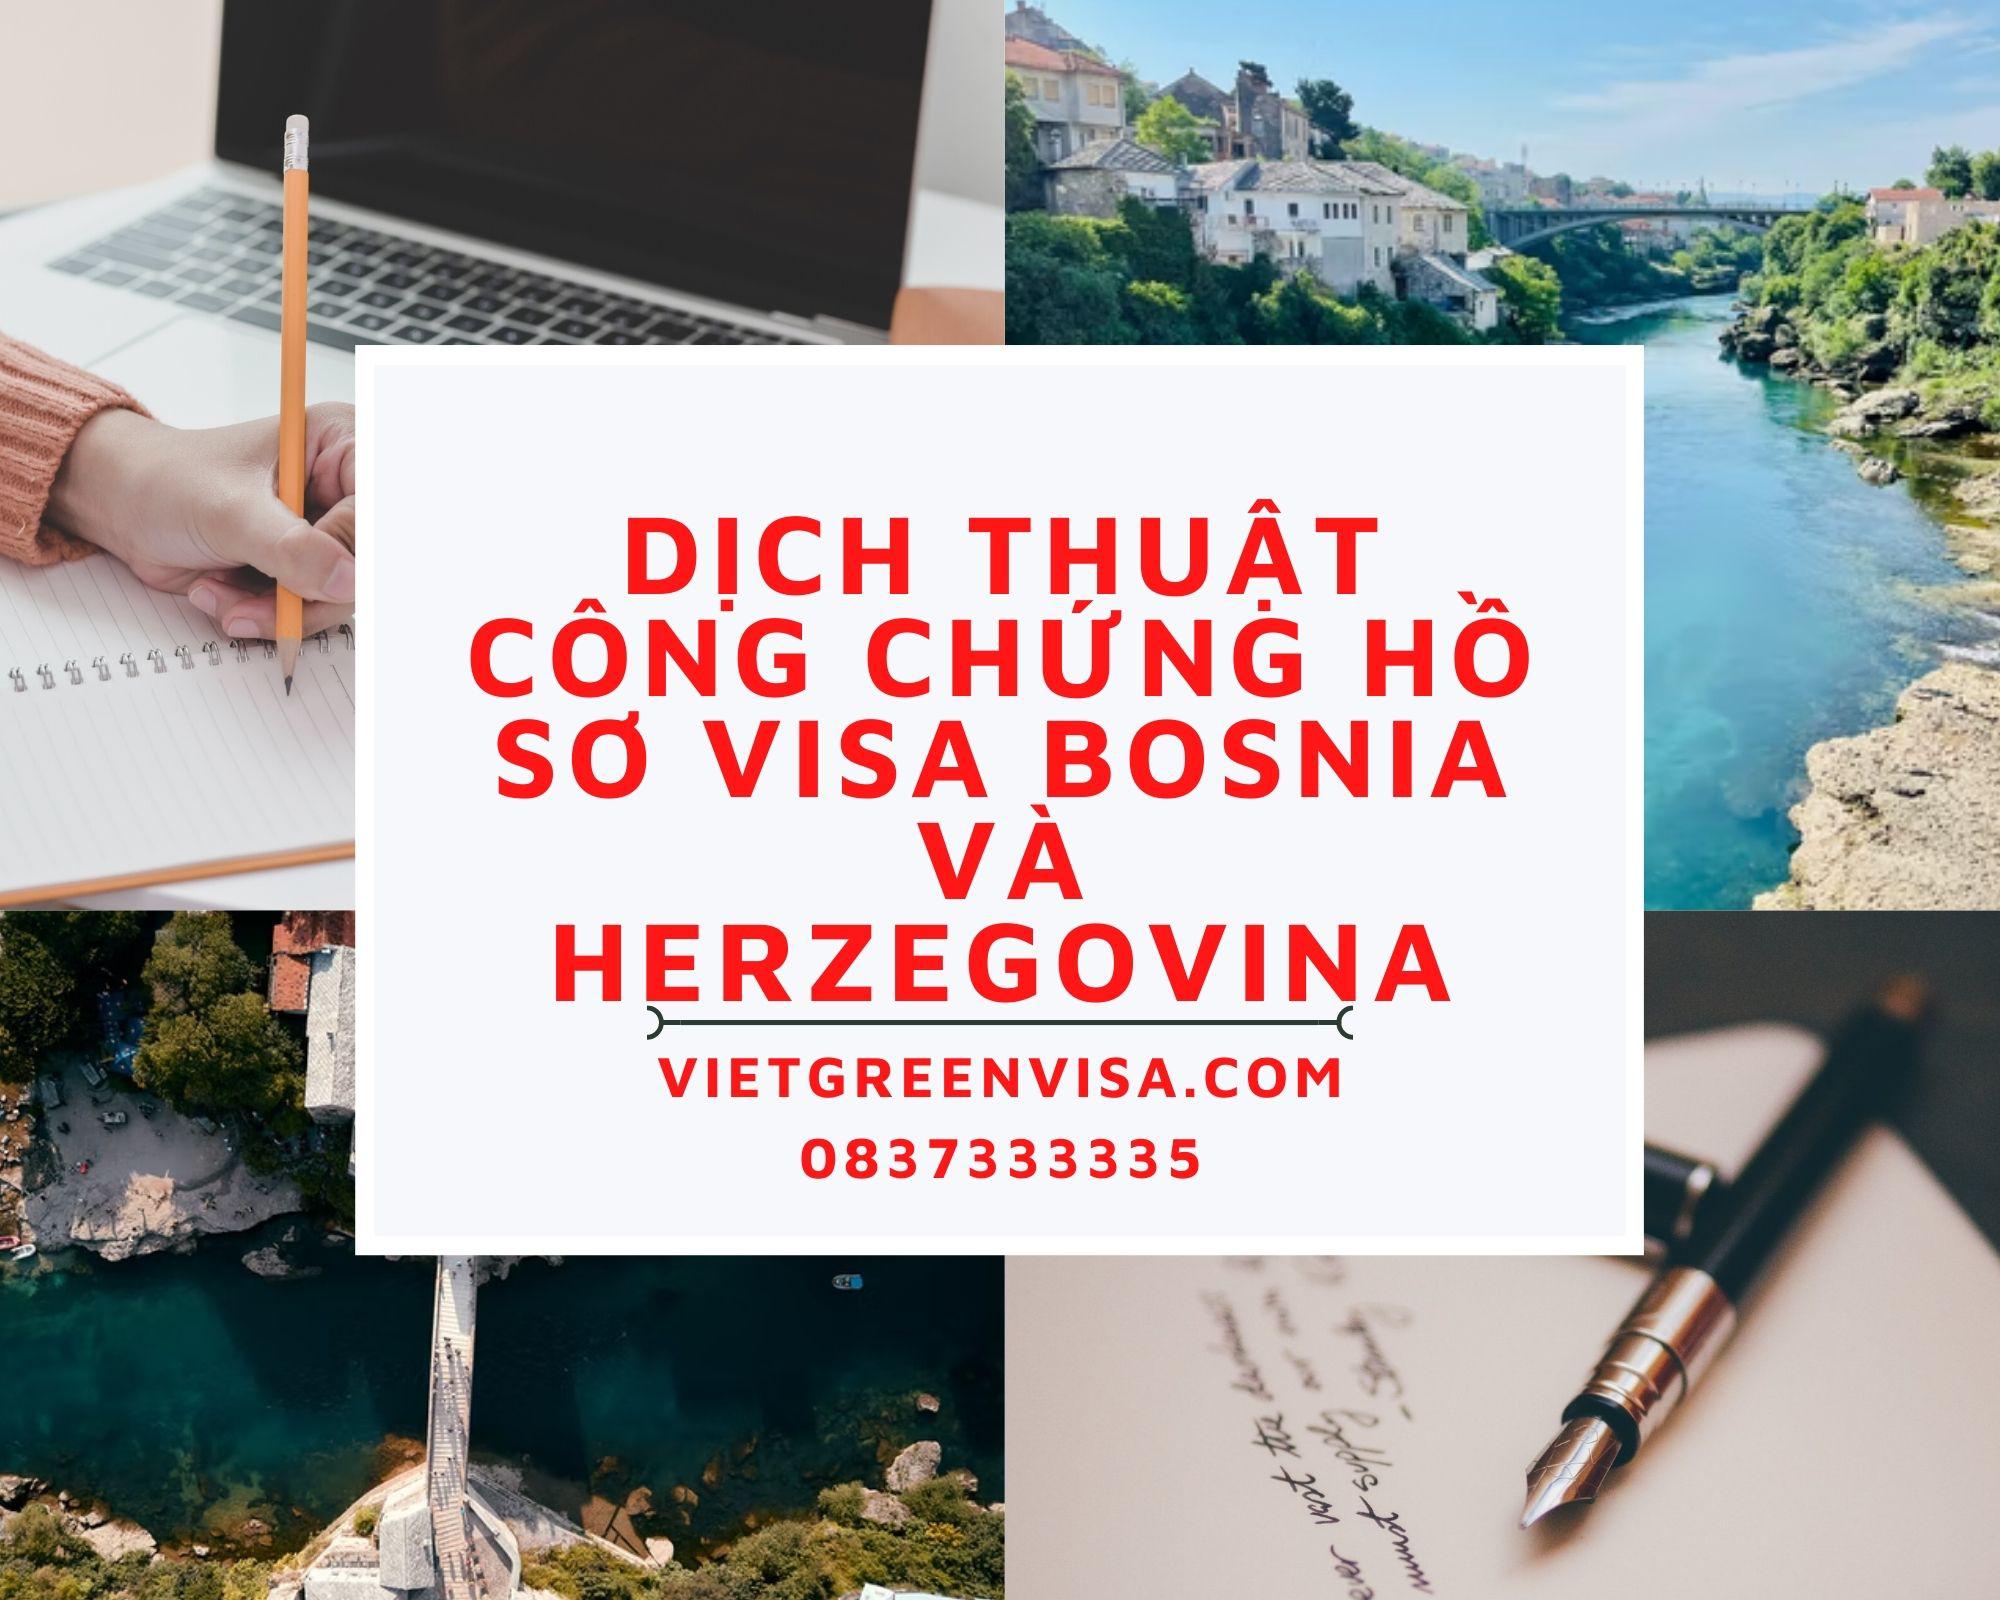 Dịch thuật công chứng hồ sơ visa du lịch, du học Bosnia và Herzegovina nhanh rẻ